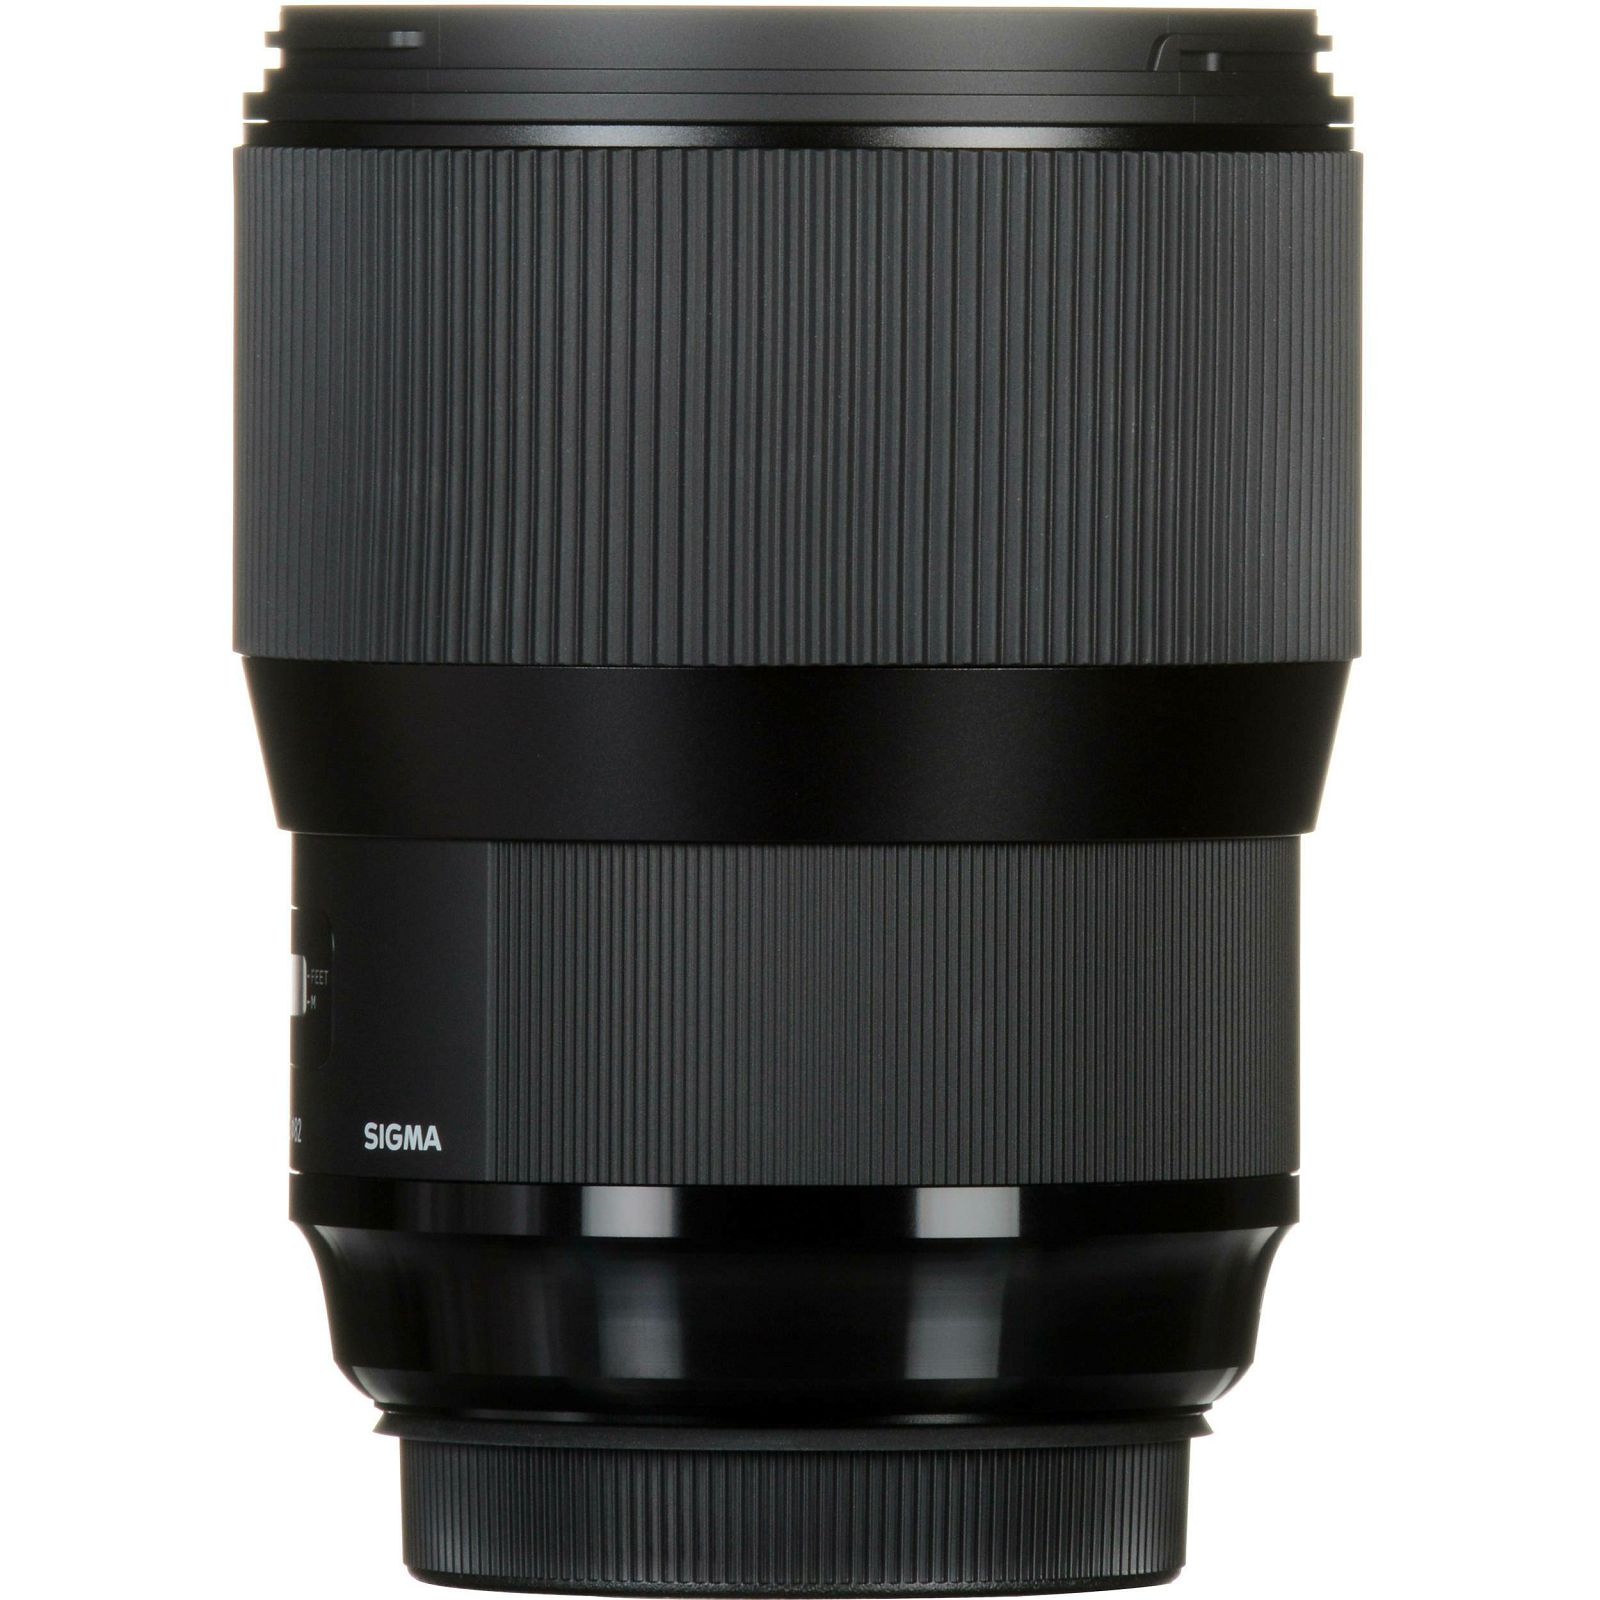 Sigma 135mm f/1.8 DG HSM ART portretni telefoto objektiv za Sony E-mount Full Frame FE (240965)